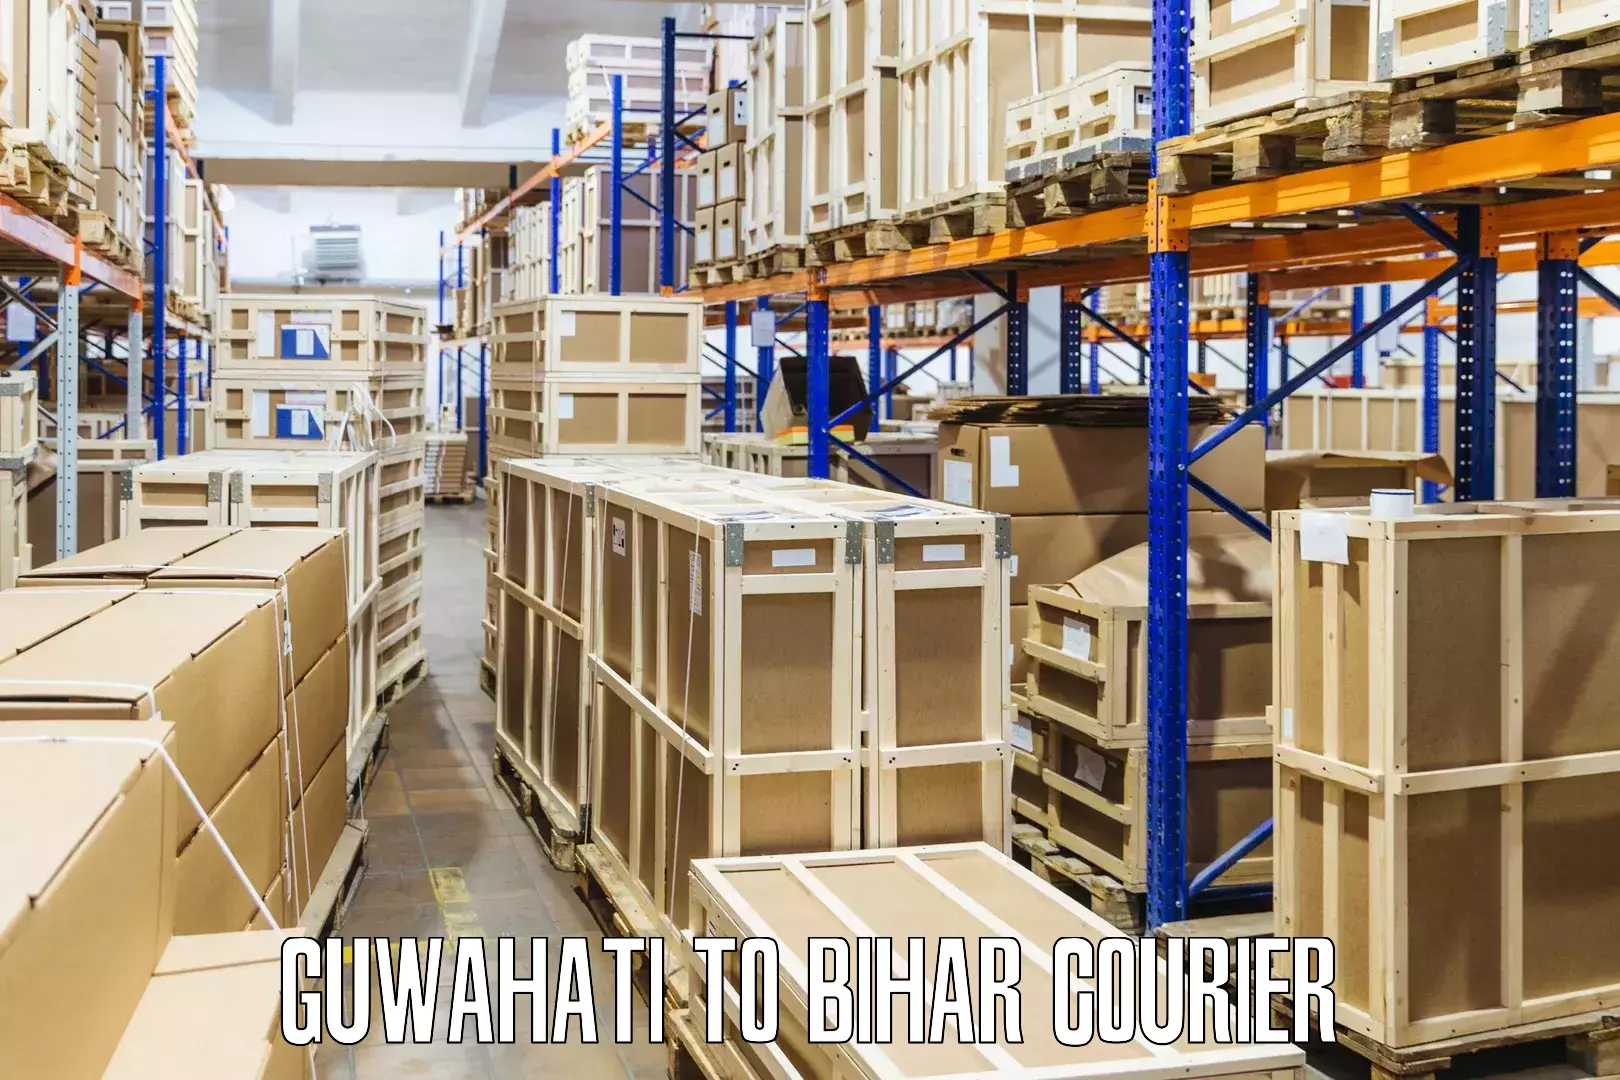 High-speed parcel service Guwahati to Bihar